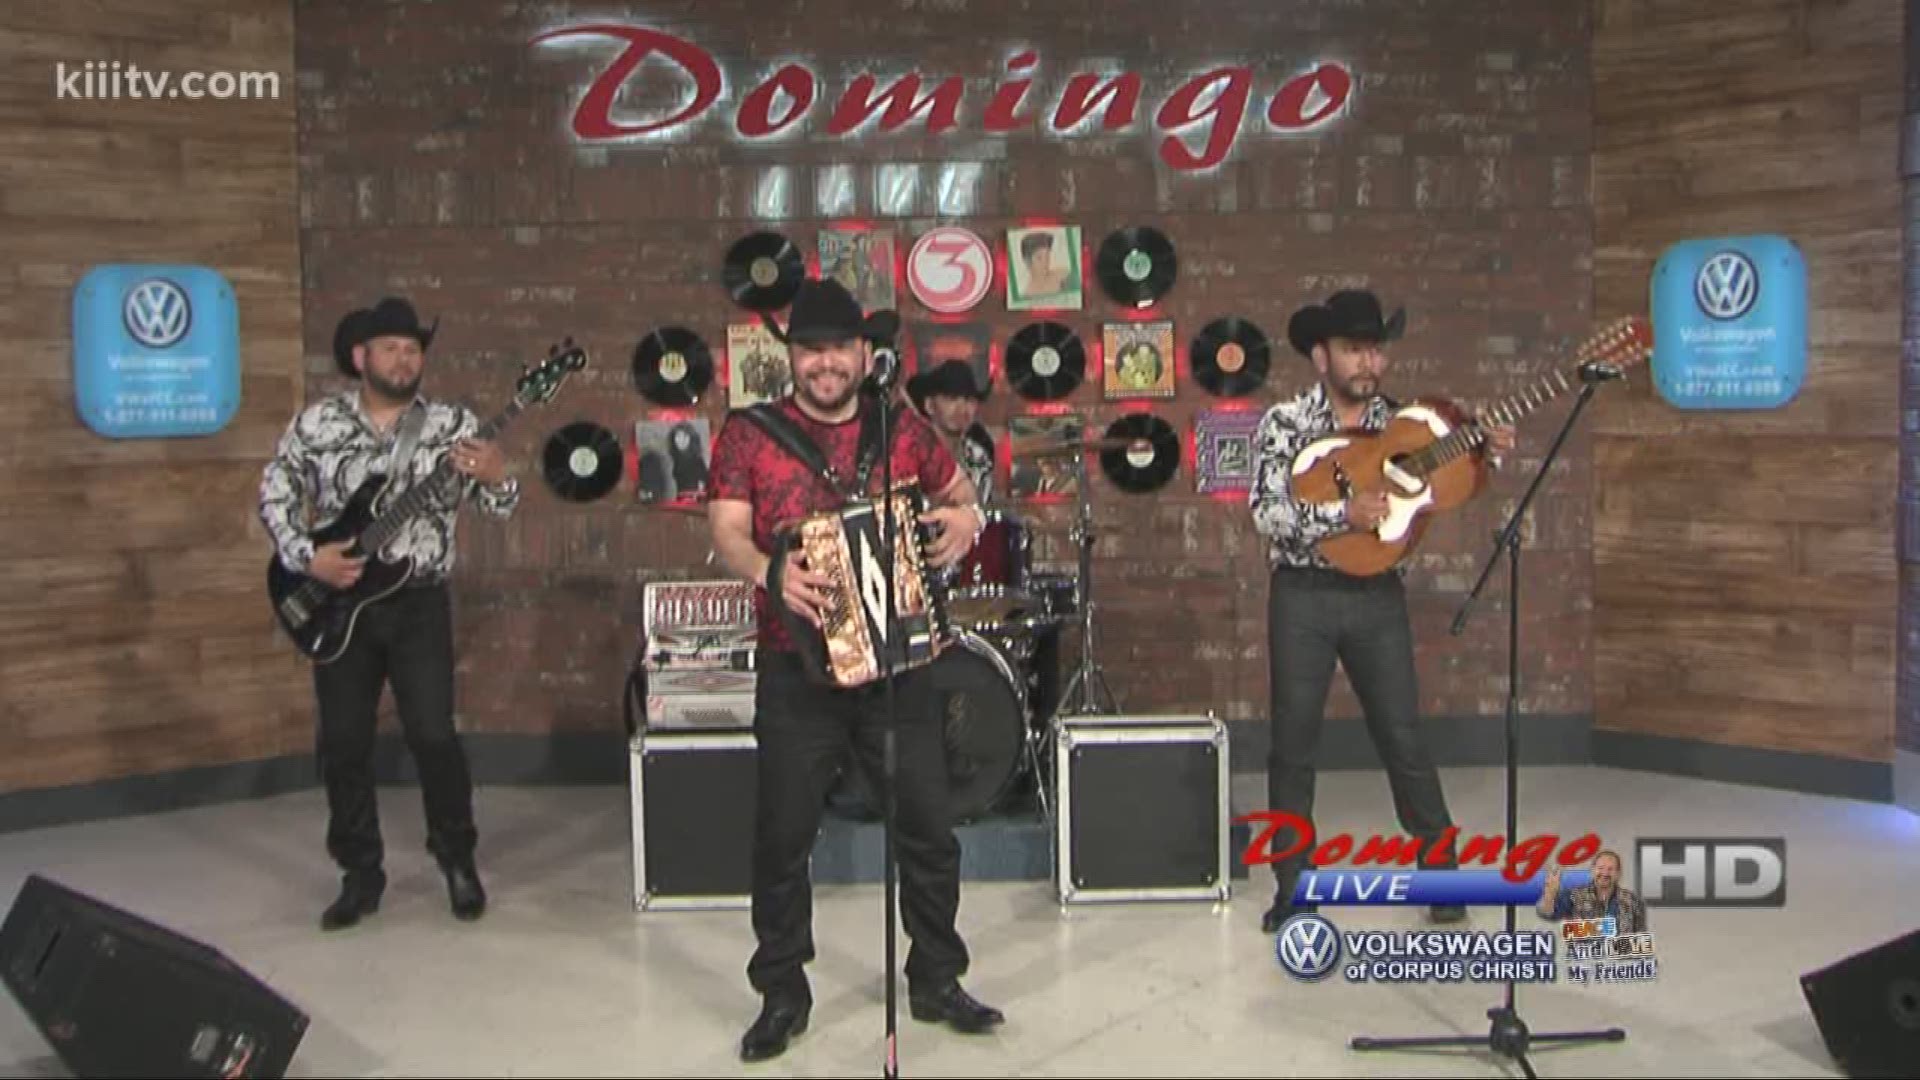 Michael Salgado performing "Domingo En Juarez" on Domingo Live.